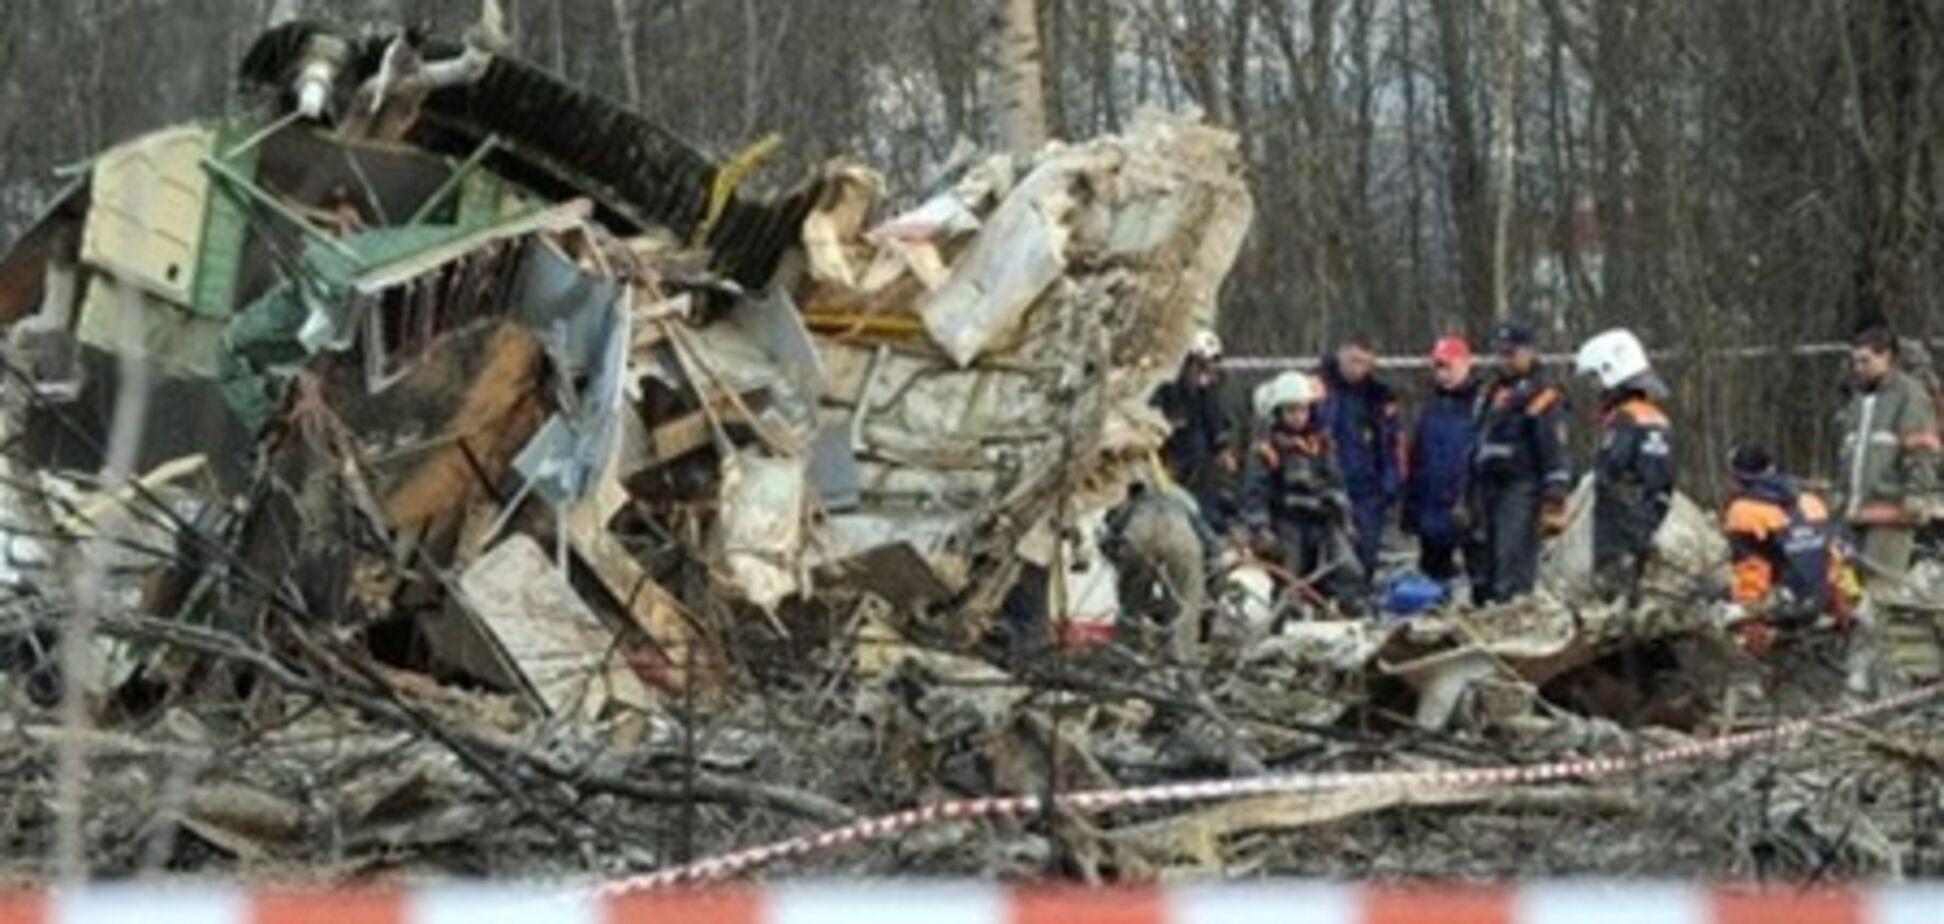 Аэропорт, где разбился самолет Качиньского, будет перестроен